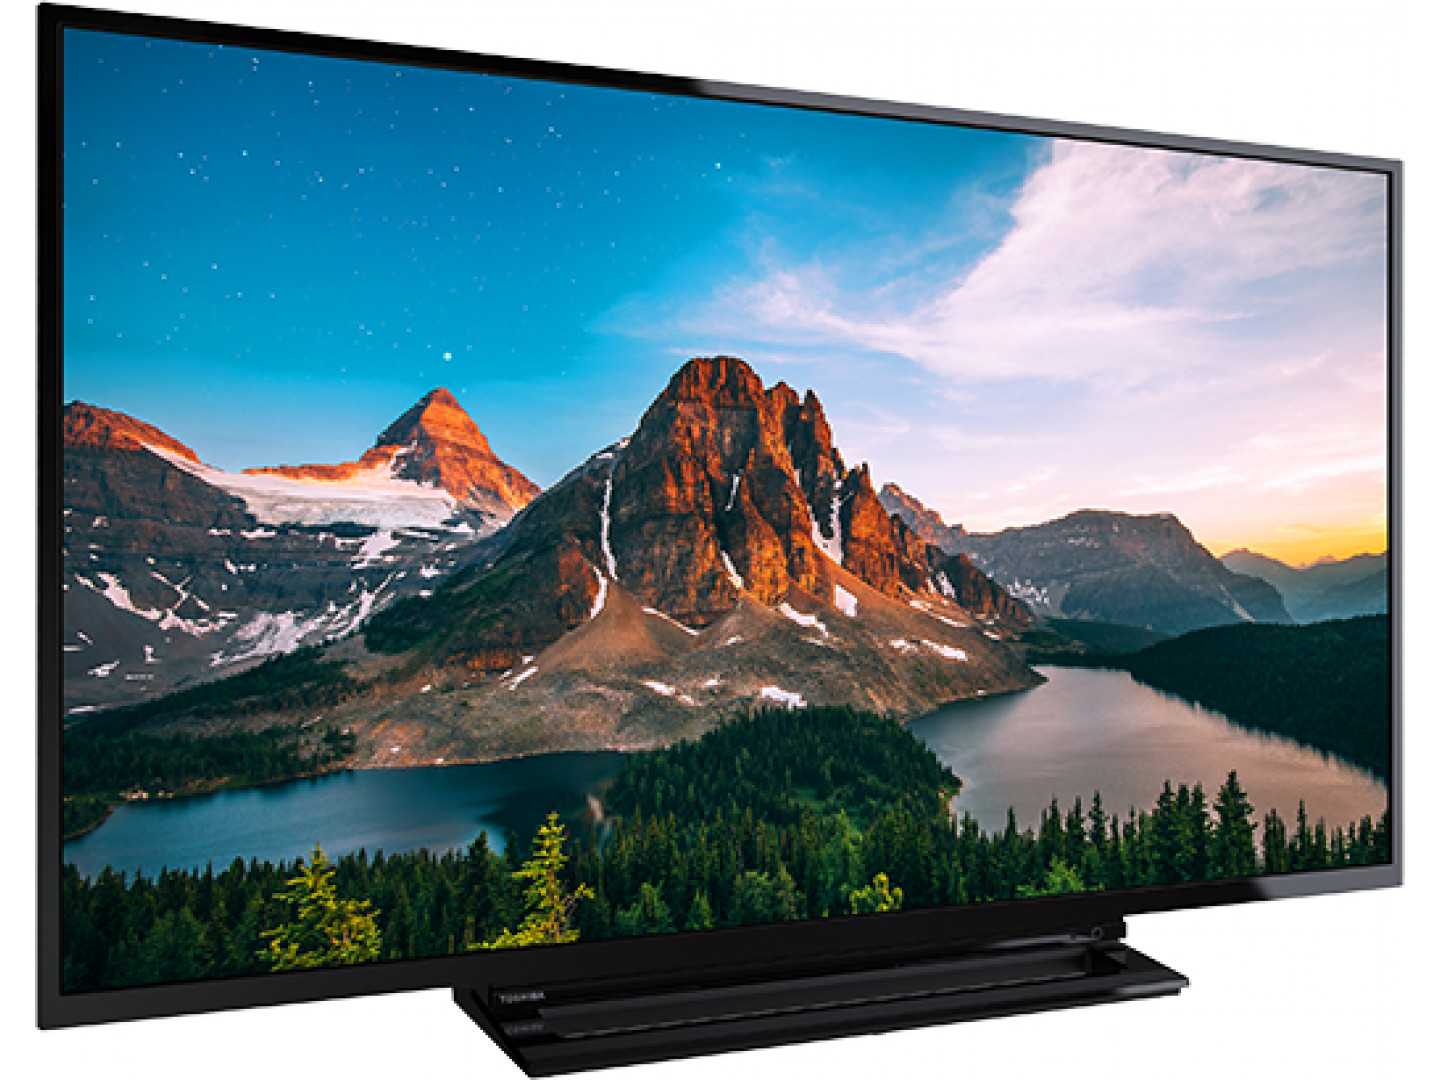 Жк телевизор 42" toshiba 42wl55r — купить, цена и характеристики, отзывы